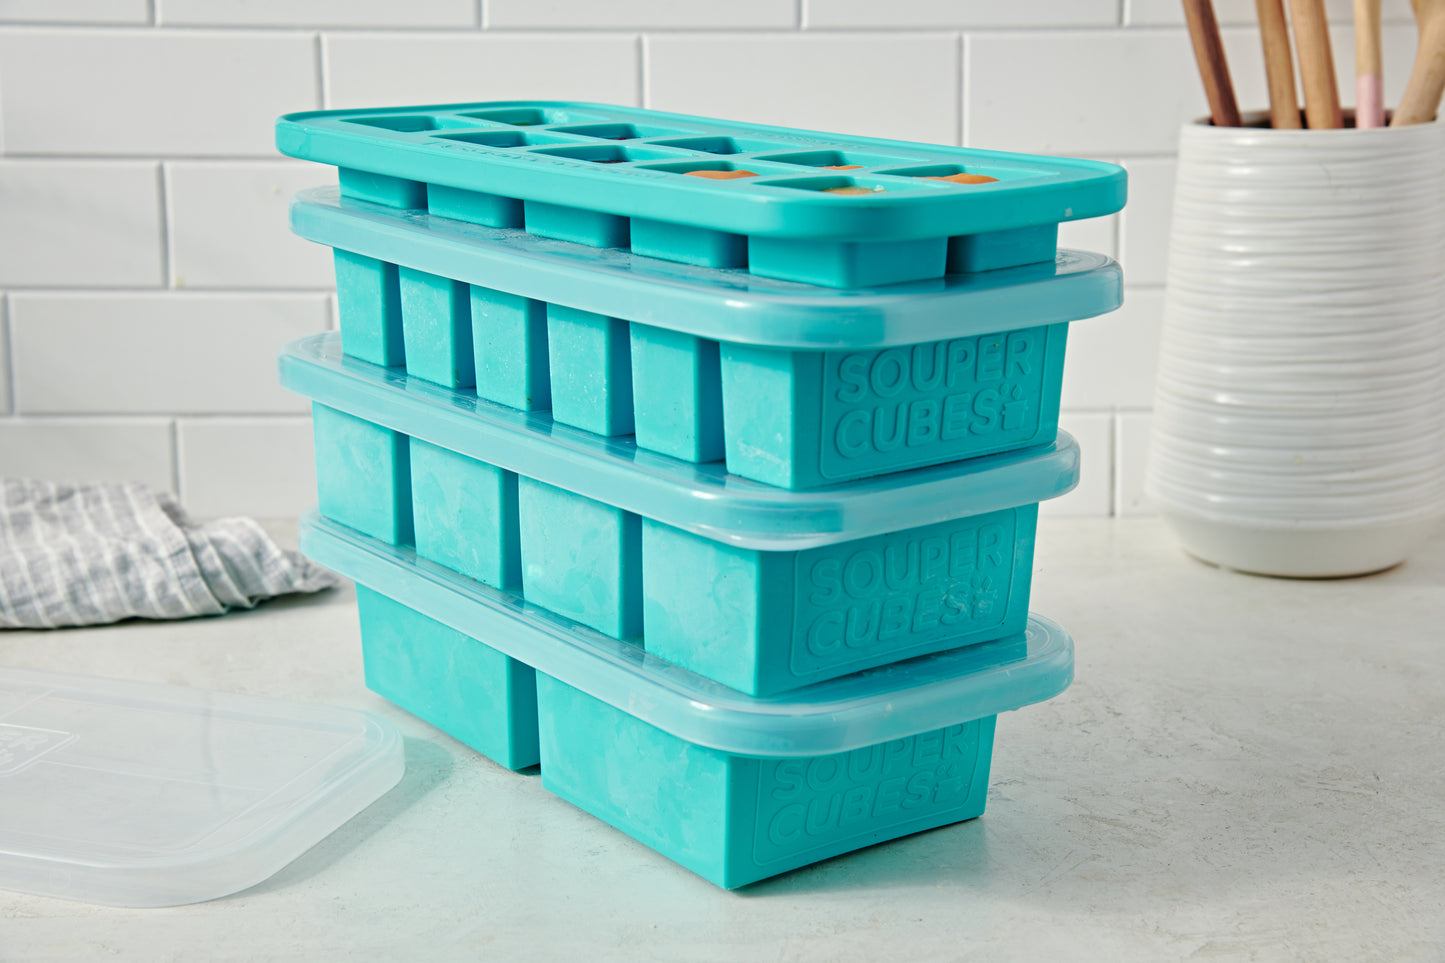 Half Cup Tray – Souper Cubes®